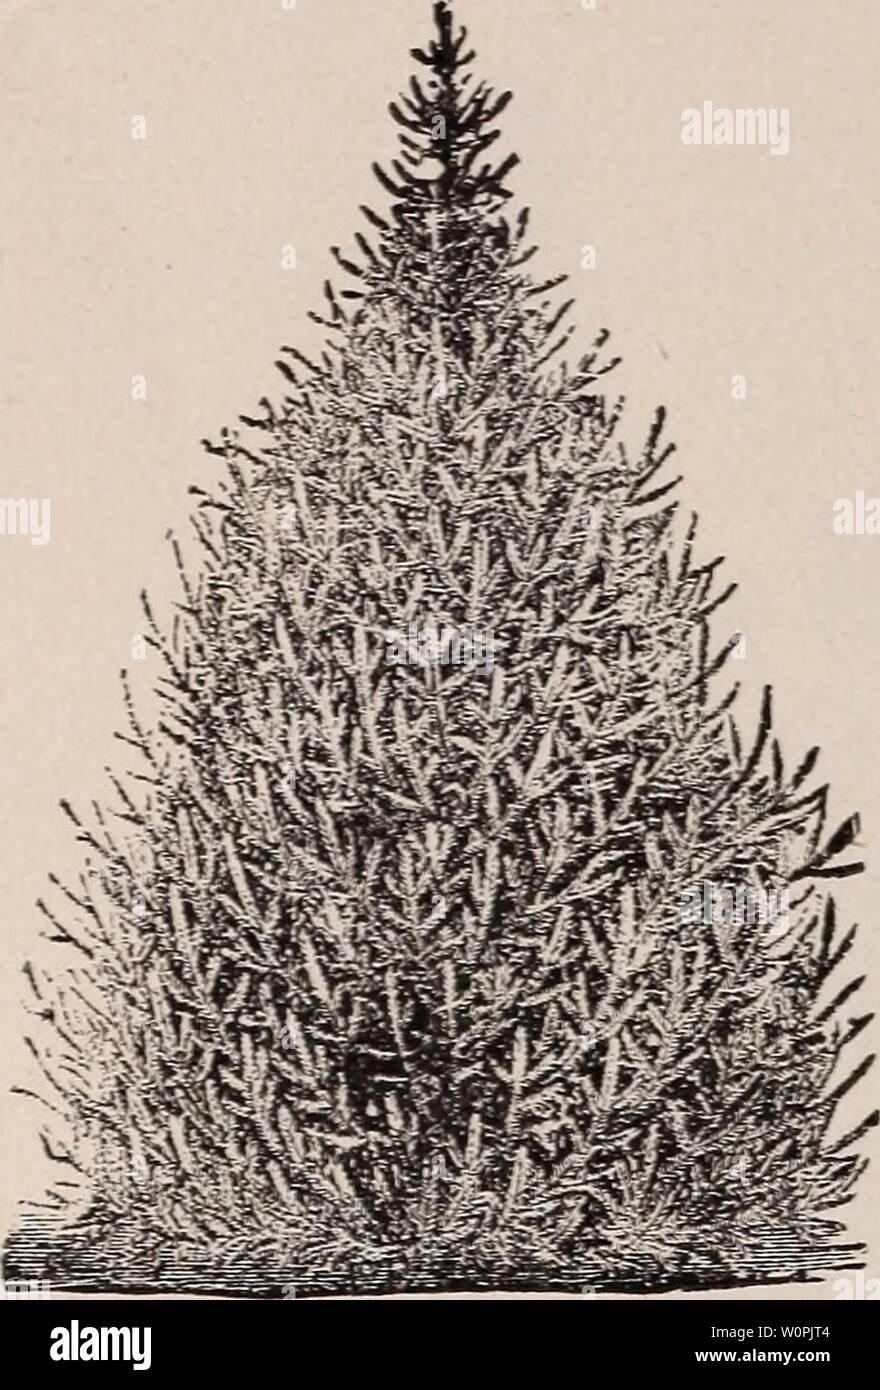 Archiv Bild von Seite 73 der beschreibenden Katalog von Obst und. Beschreibender Katalog der Obst- und Zierbäume, Evergreens, Weinreben, Sträucher, Zwiebeln, etc. descriptivecatal 1890 stor Jahr: 1890 64 2'er speichert eine "HARRTSOX CO. DER KATALOG von Fichte 1 Abies.) XORWAY (ExcclscO - eine hohe, elegante Baum, der pro-fect pyramidenförmigen Gewohnheit, auffallend elegant und reich, wie es Alter erhält, hat feine, anmutig, Pen-dulous Zweige; es ist sehr malerisch und schön," sehr beliebt, und verdientermaßen so, und sollte weitgehend gepflanzt werden. Eine der besten Evergreens für Hecken. AMERICAX WEISS (/7x () - Eine groß Stockfoto